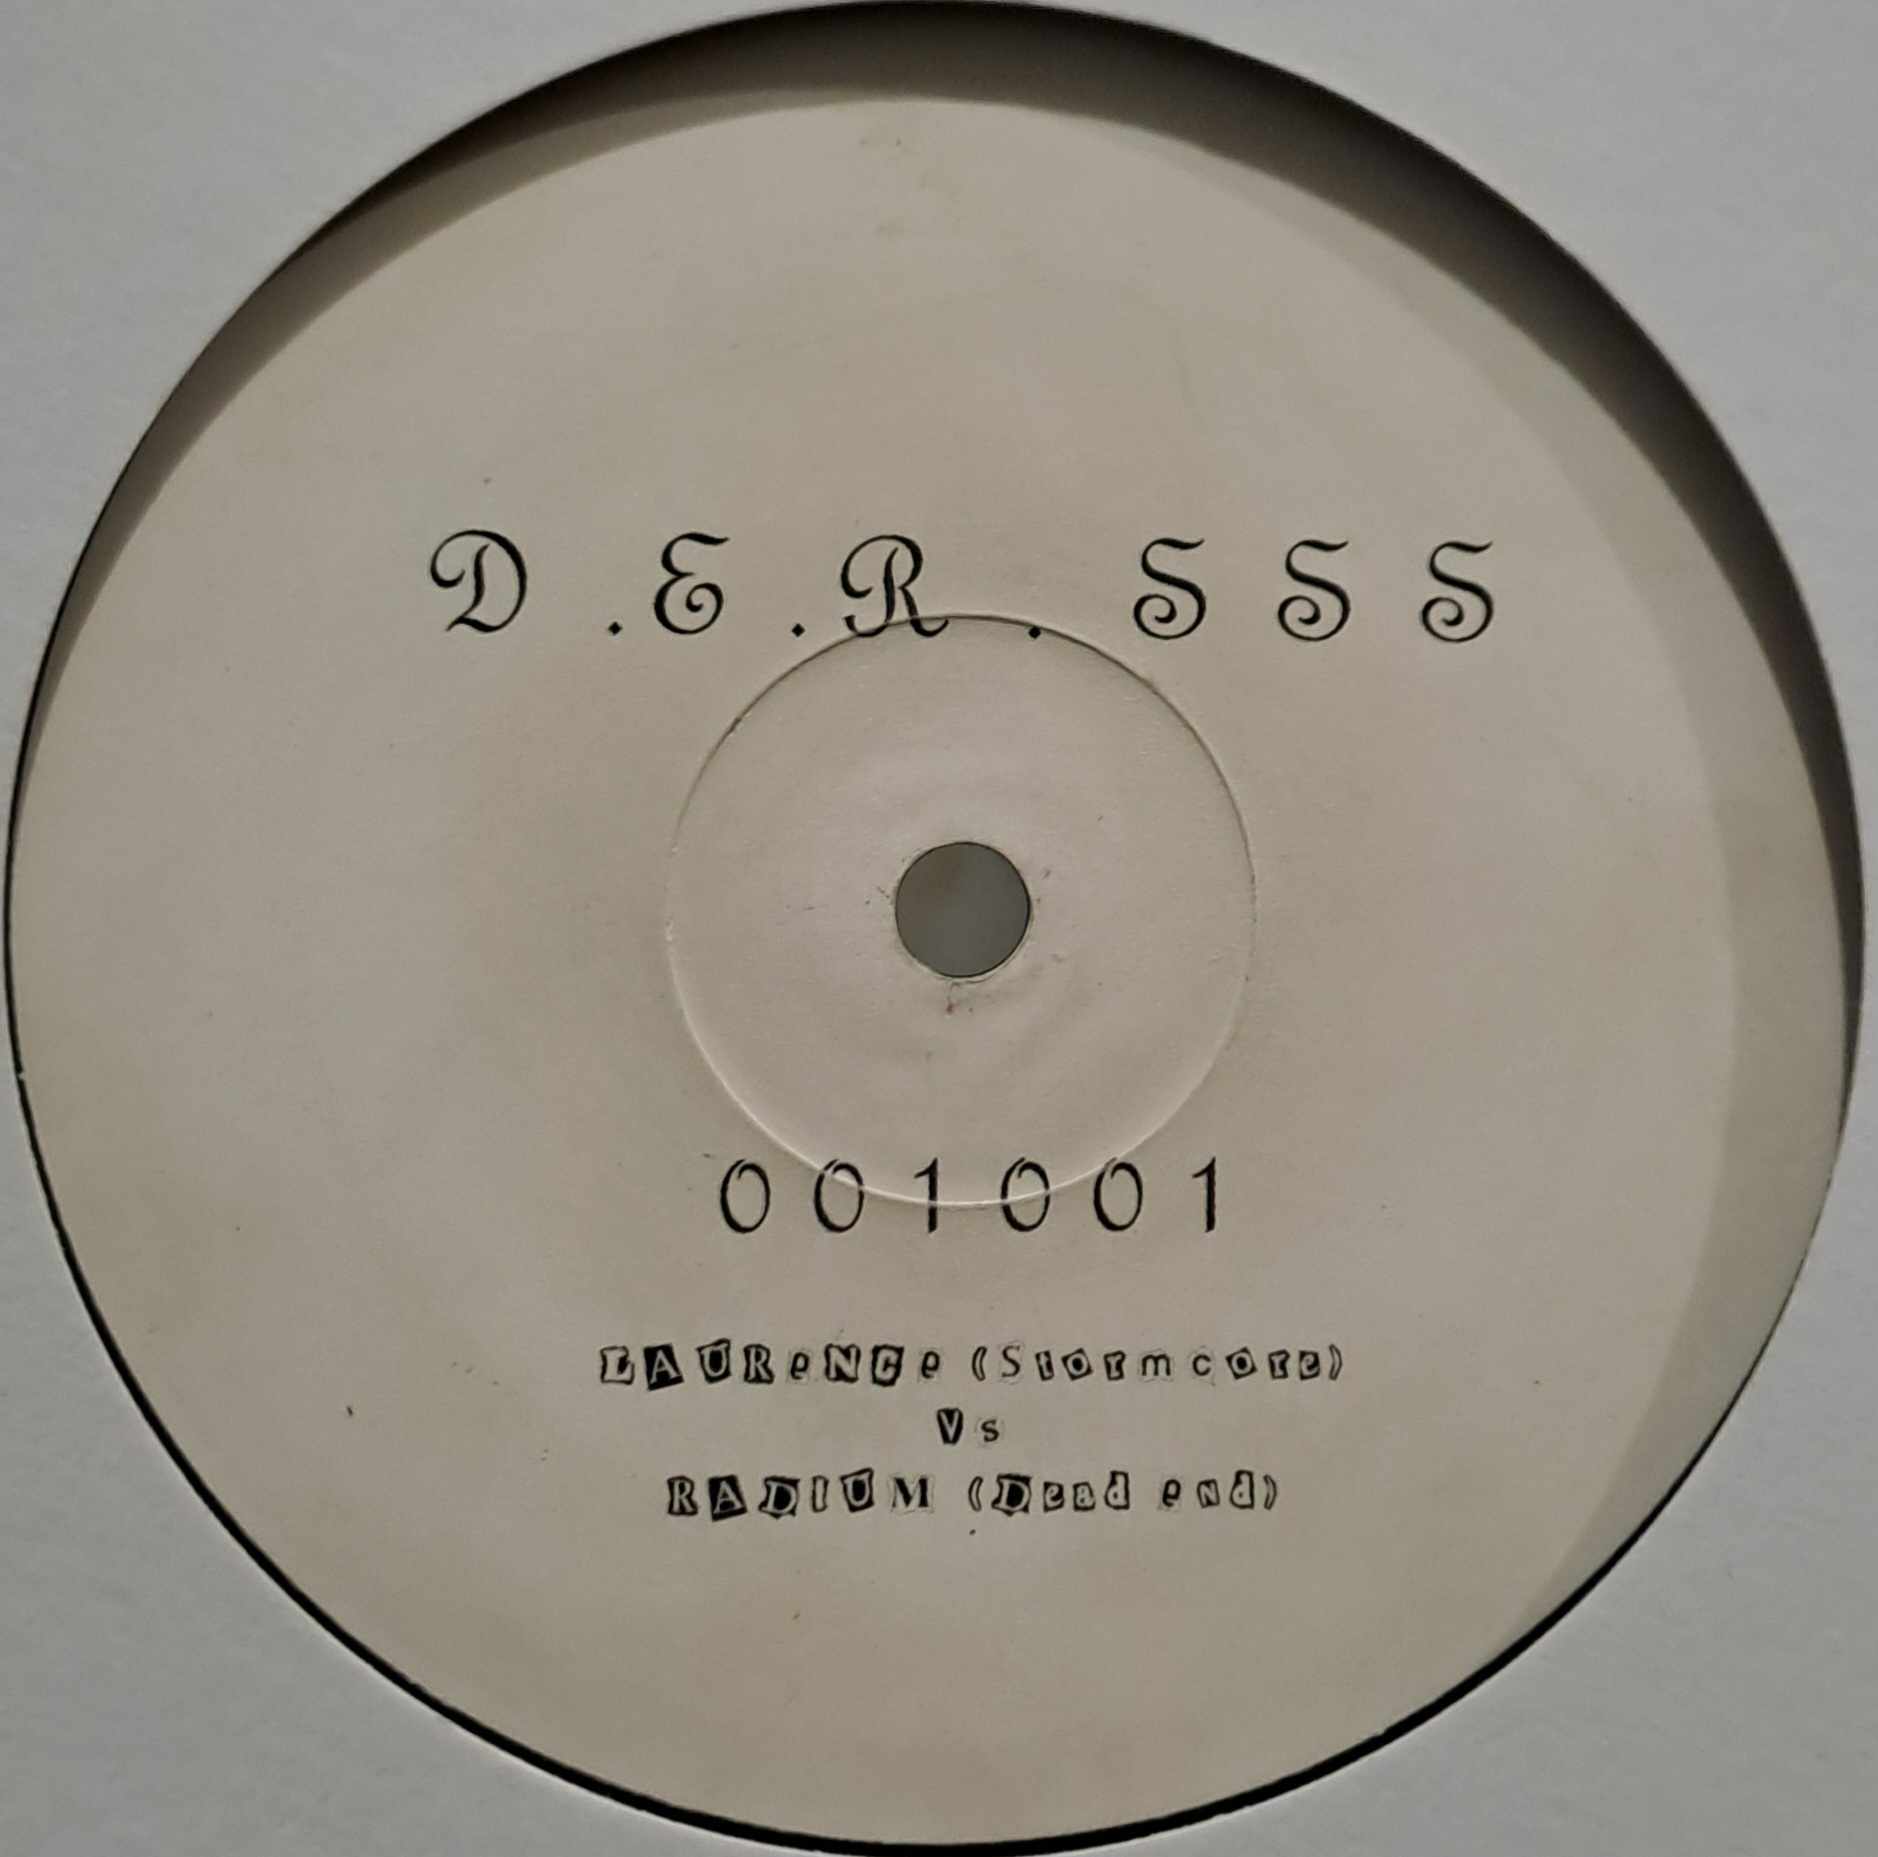 Dead End Records SSS 001 001 - vinyle hardcore